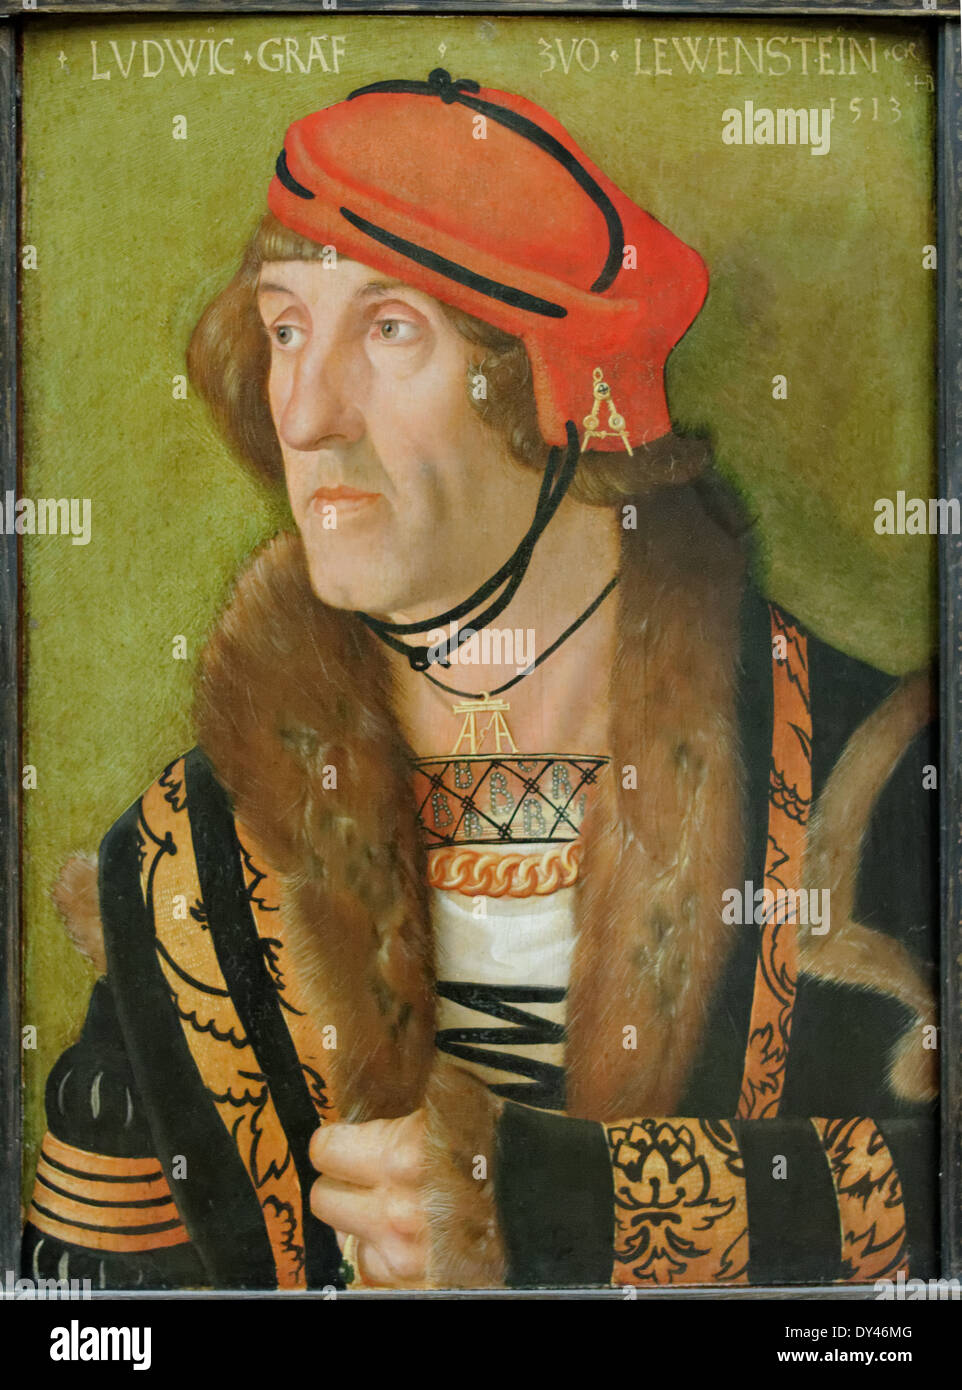 Hans Baldung Grien - Ludwig Graf Zu Löwenstein - 1513 - XVI th Jahrhundert - deutsche Schule - Gemäldegalerie - Berlin Stockfoto